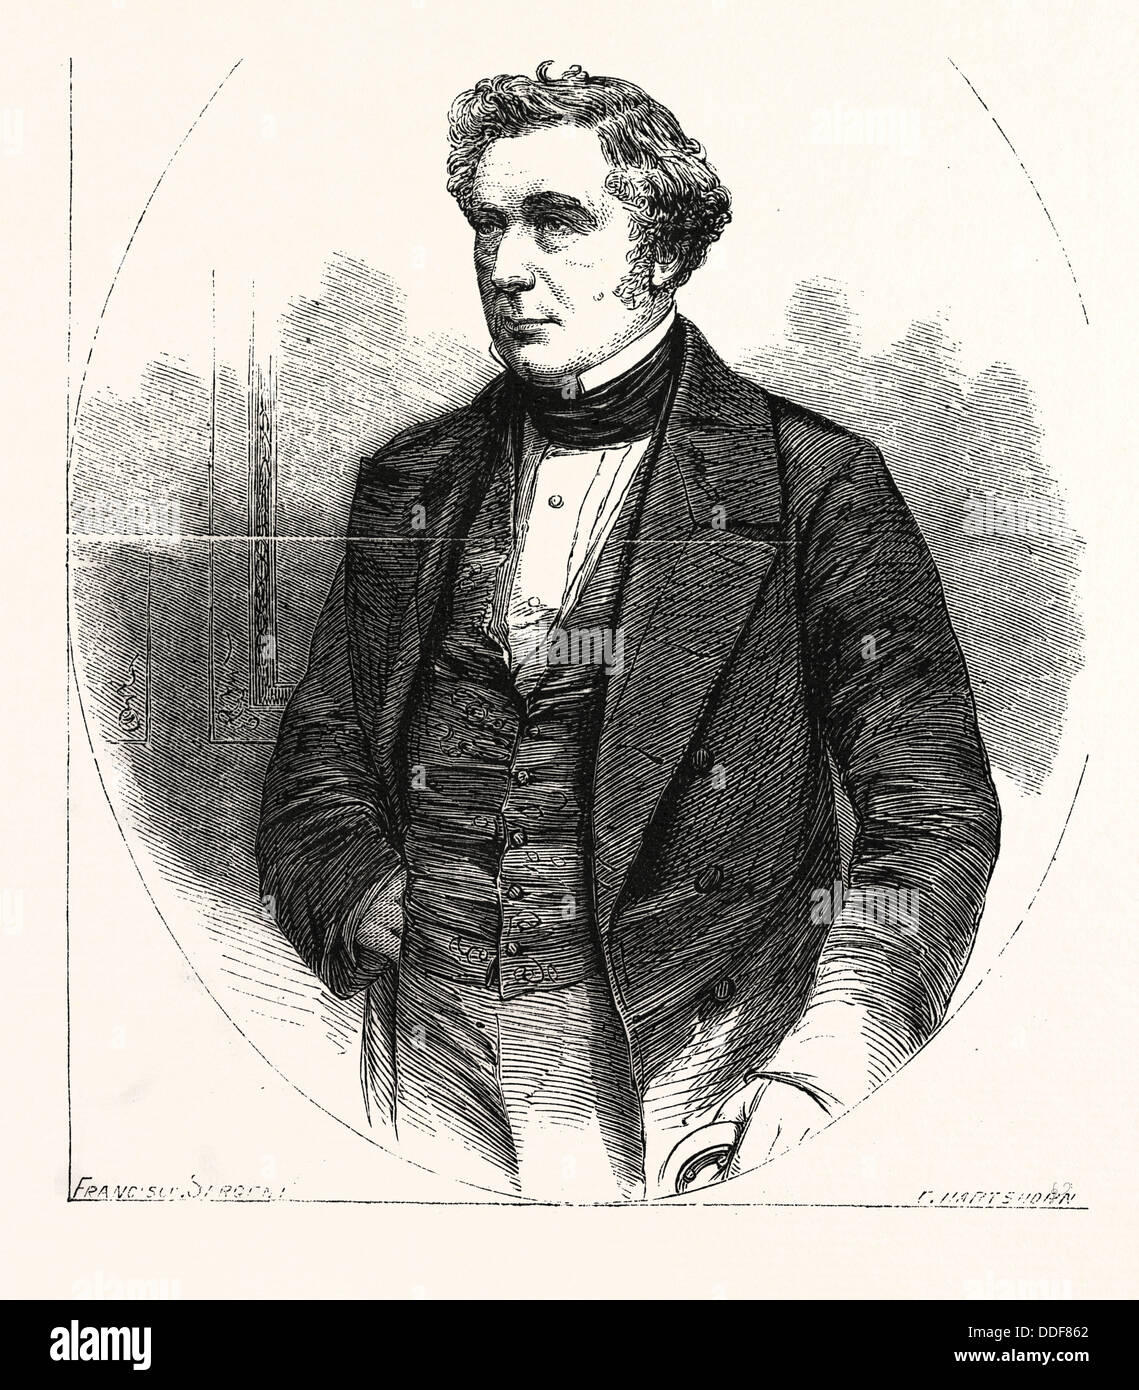 ROBERT STEPHENSON 16 Octobre 1803 12 octobre 1859, est un ingénieur civil. Royaume-uni, Angleterre, Grande-Bretagne, Europe, Royaume-Uni Banque D'Images